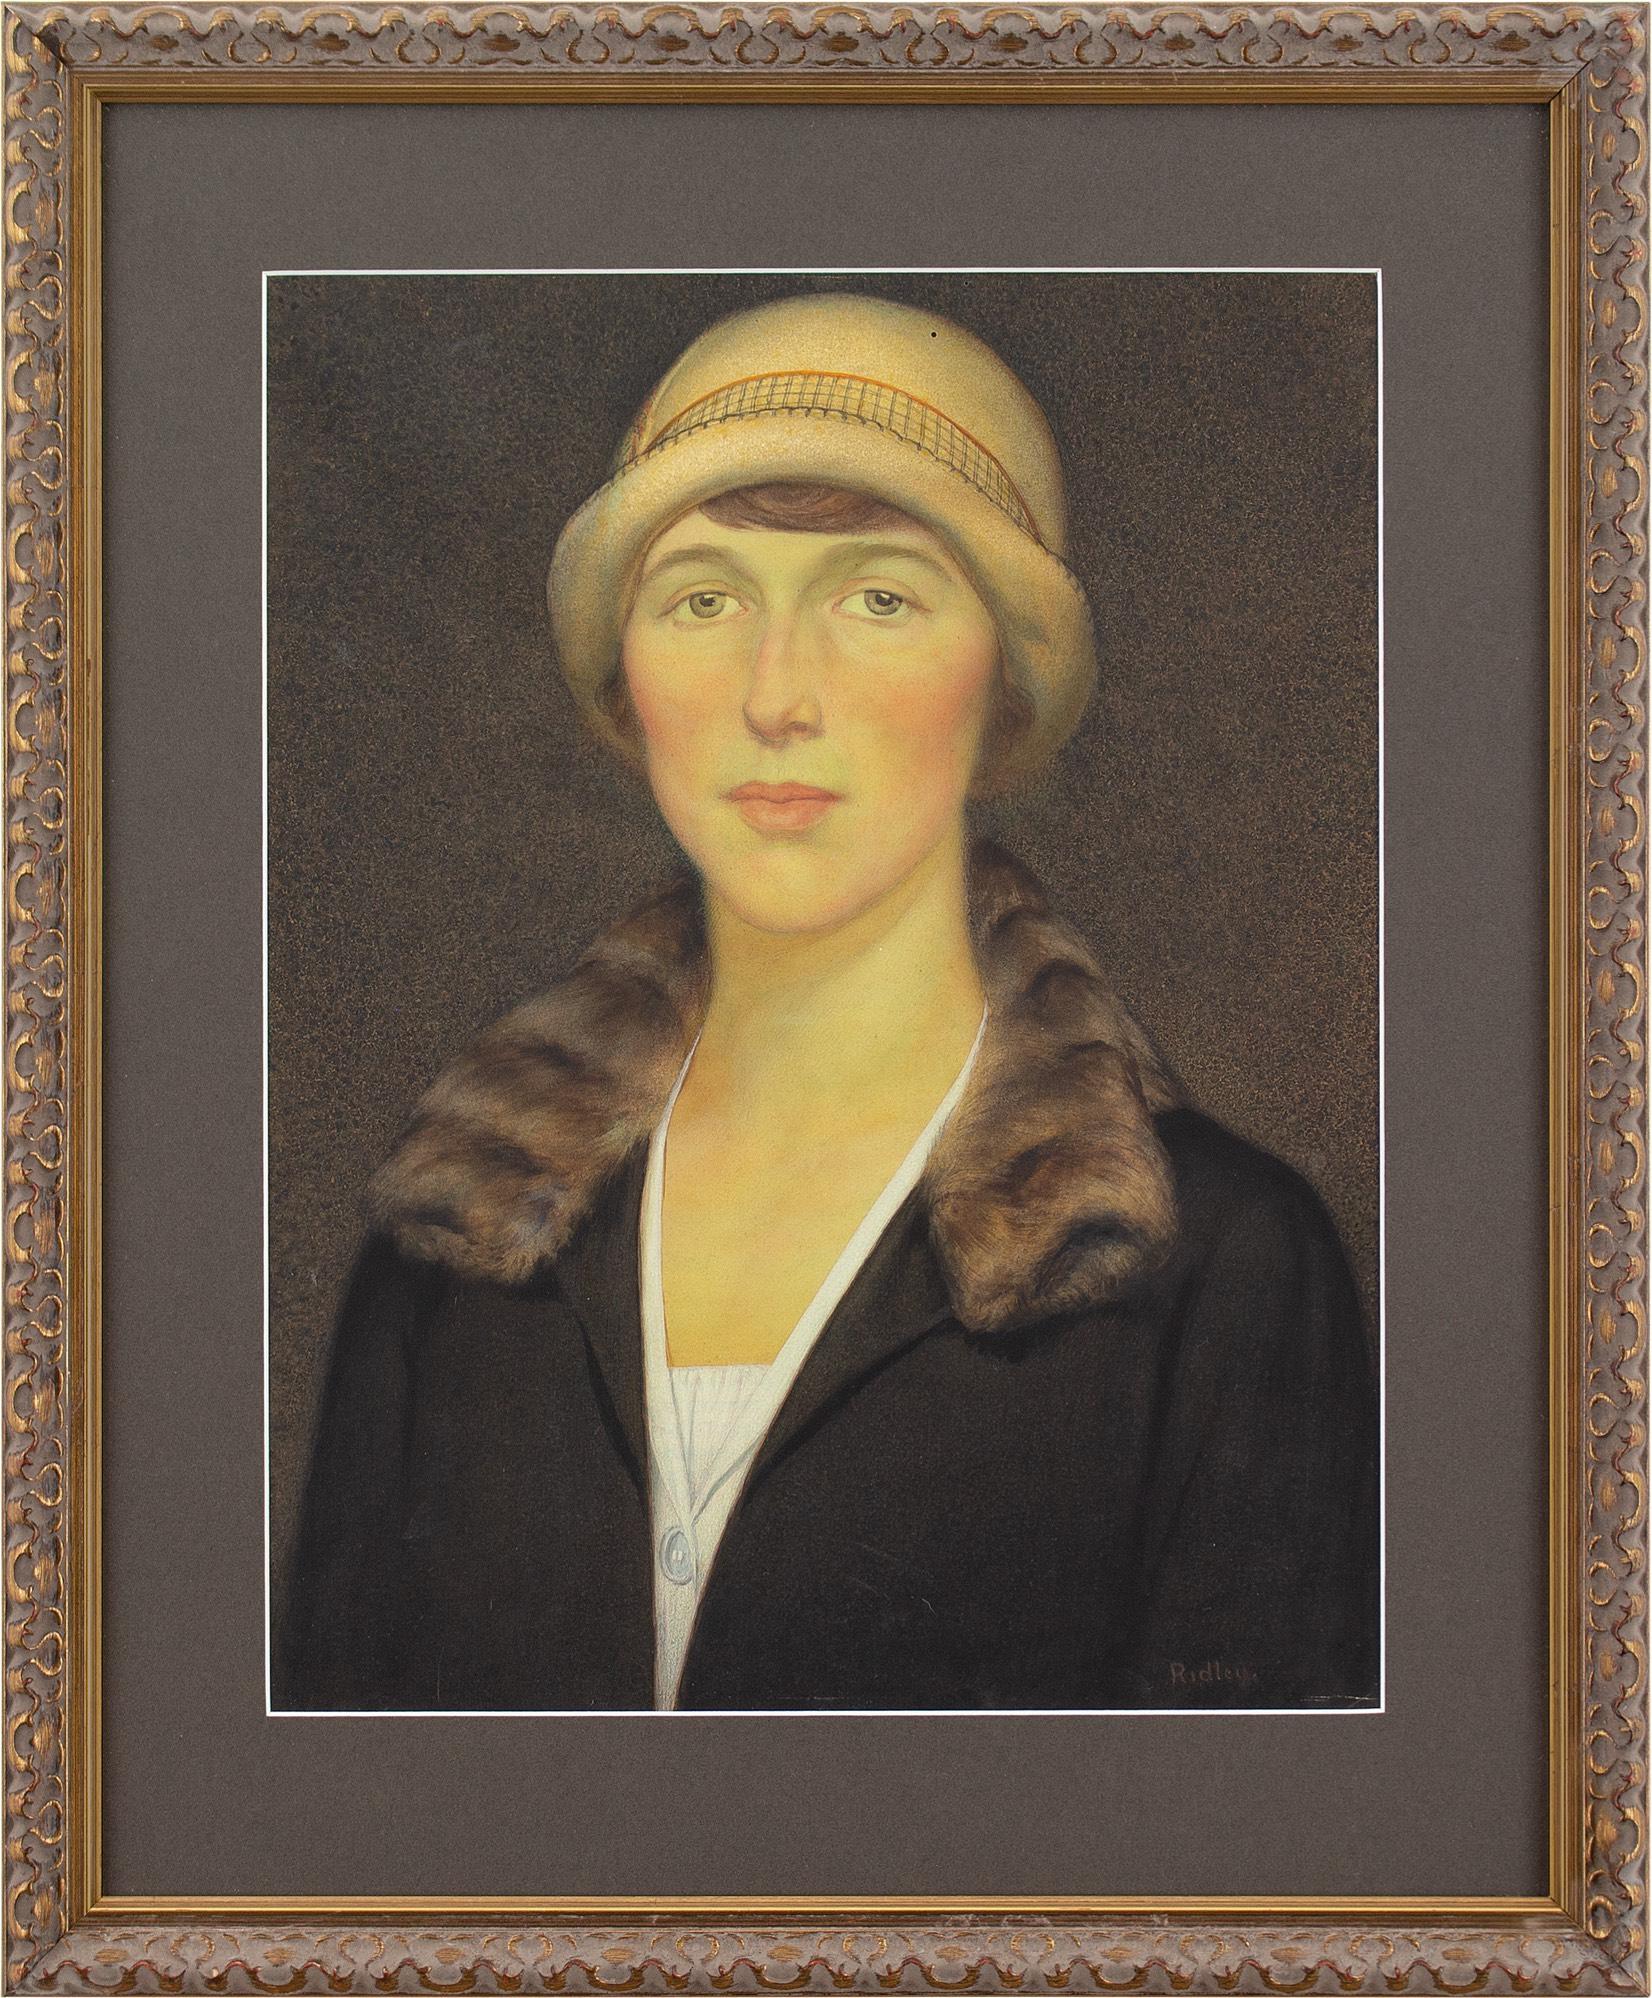 Dieses stilvolle Porträt des englischen Künstlers Edward Ridley (1883-1946) aus den 1920er Jahren zeigt eine Frau, die einen Hut und einen Mantel mit Pelzkragen trägt. Es handelt sich um ein faszinierendes Werk, das während Ridleys Zeit als Leiter